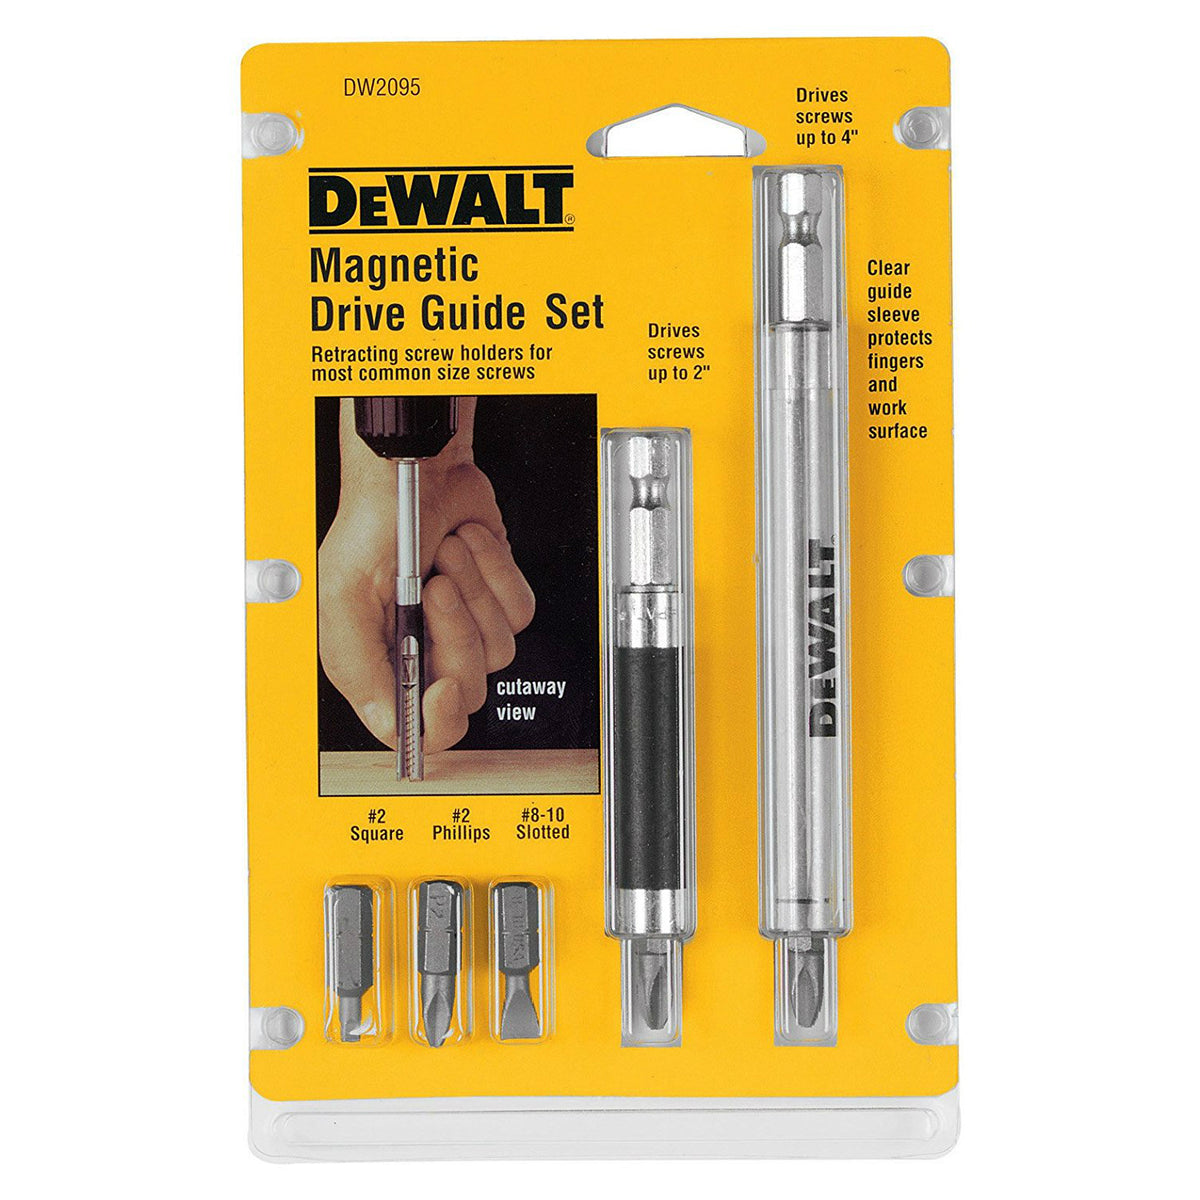 DeWalt DW2095 Magnetic Drive Guide Set, 7 Piece